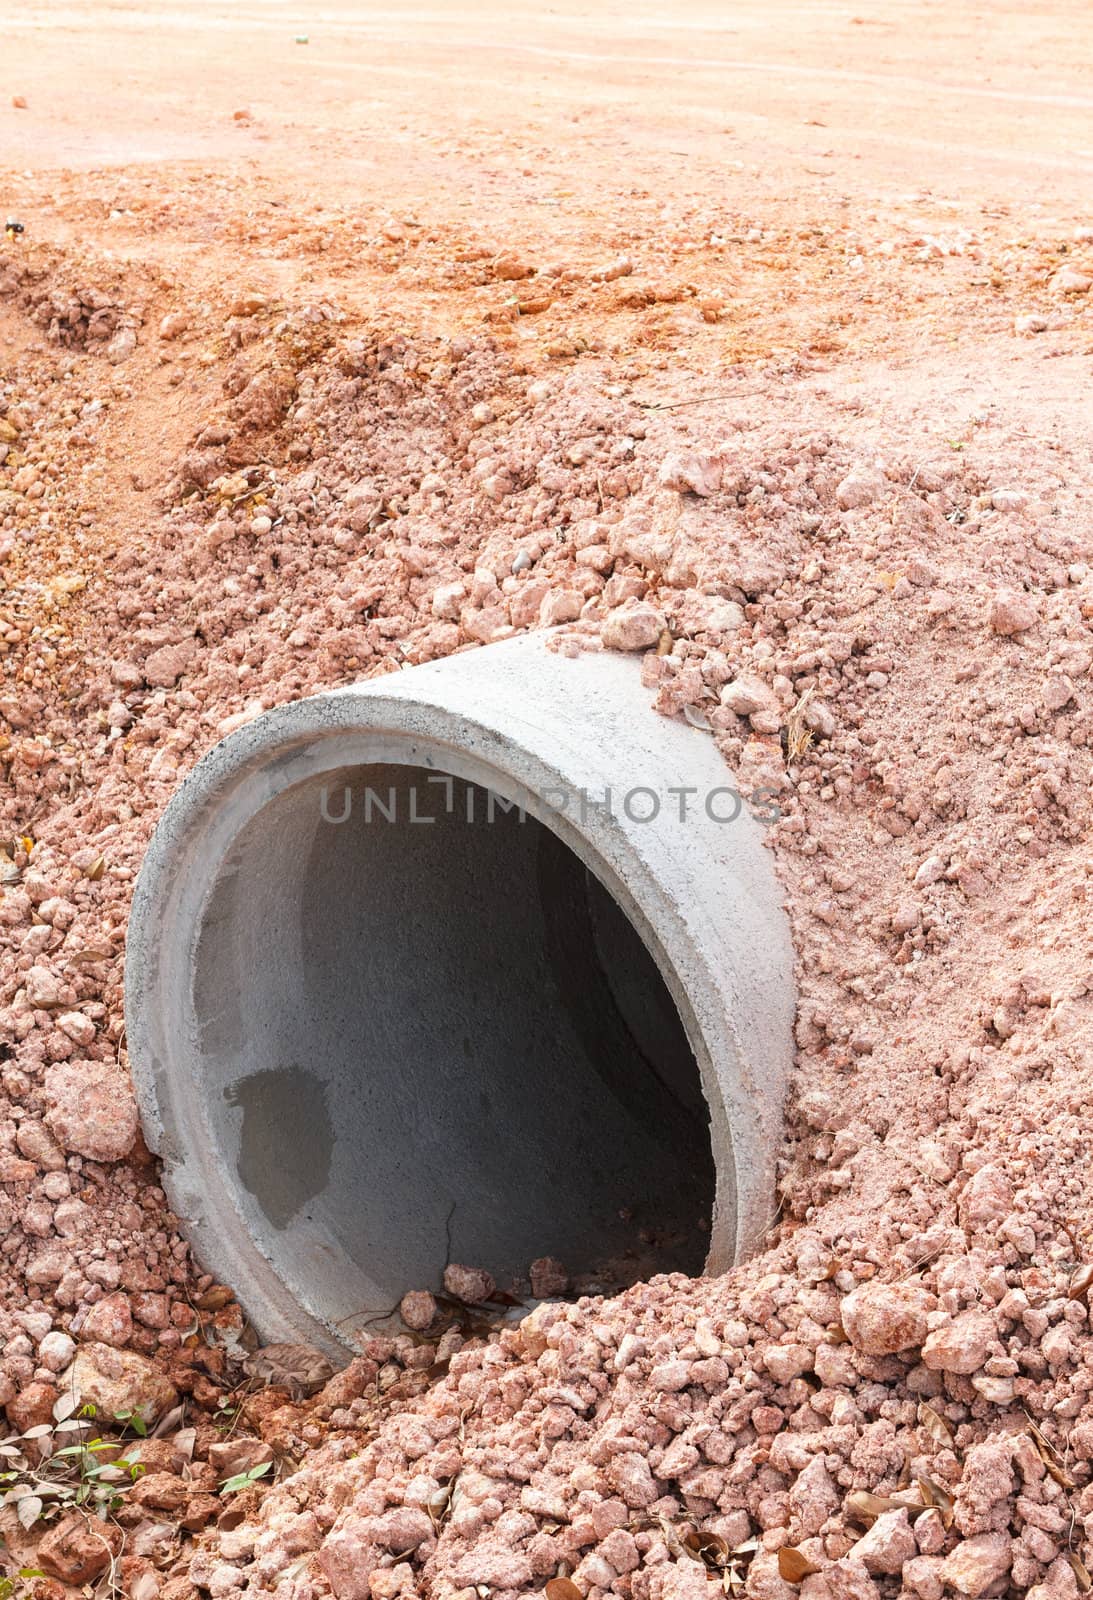 Concrete sewage pipes under construction site